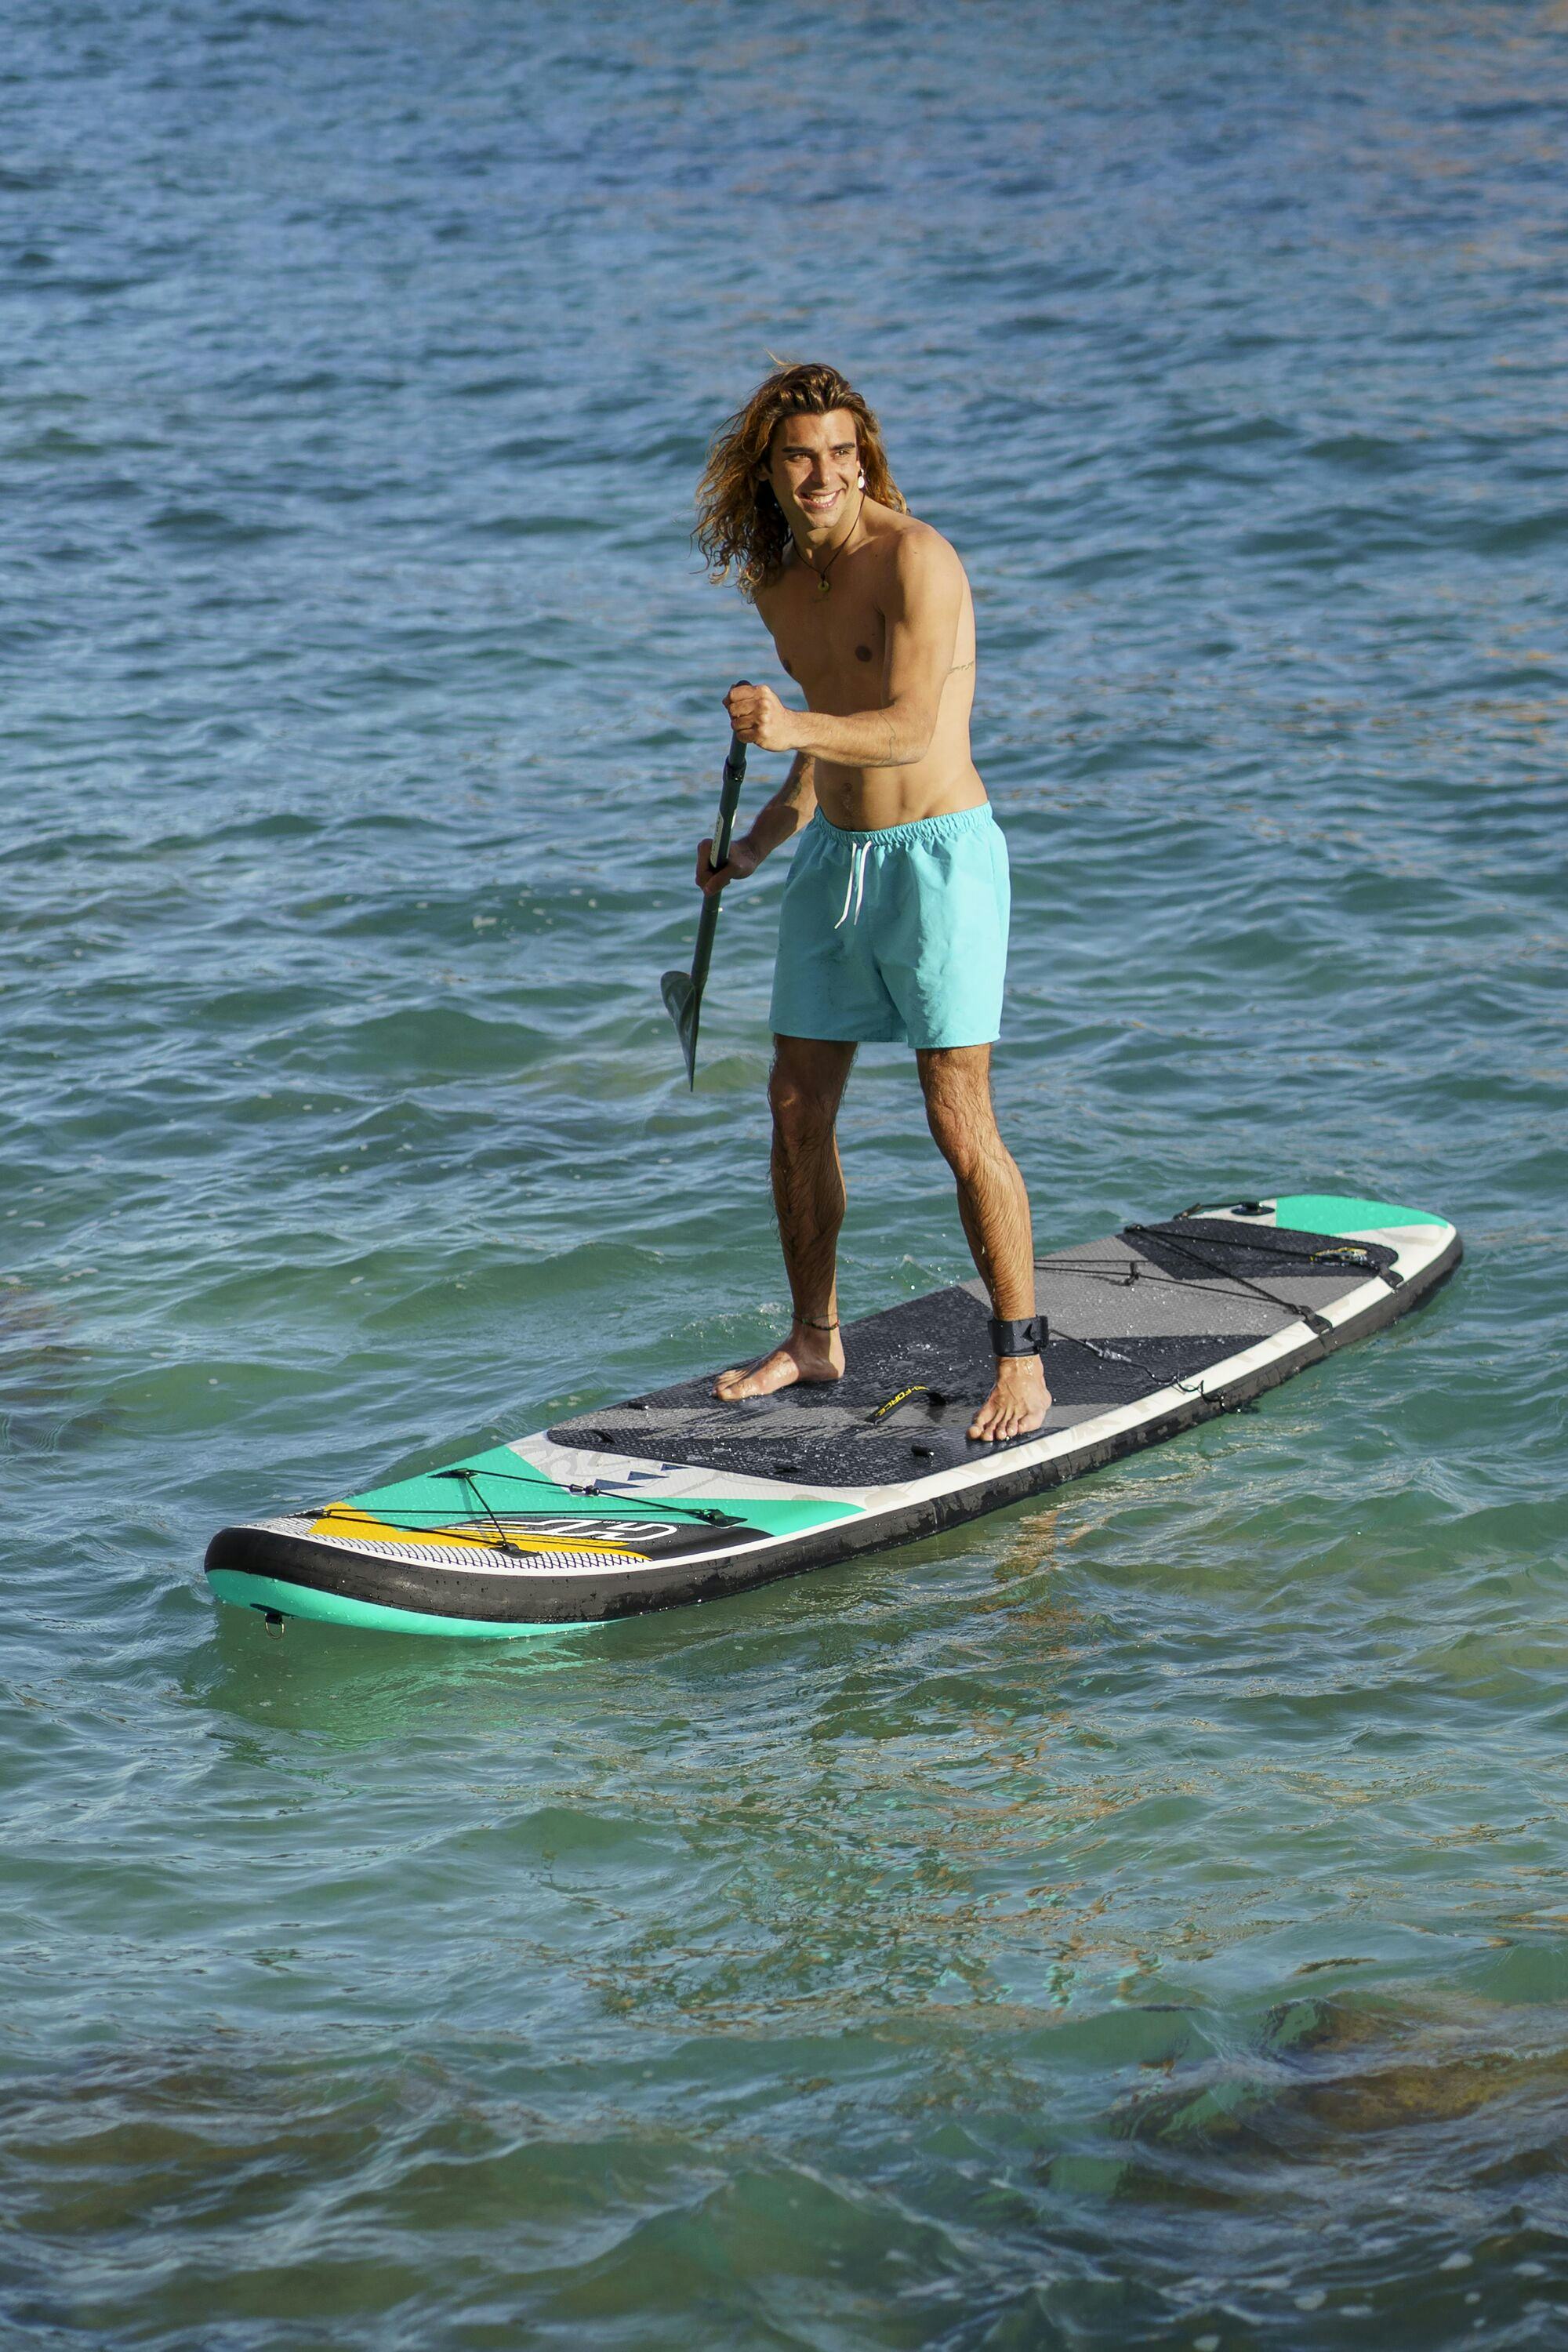 Sports d'eau Paddle SUP gonflable Hydro-Force™ Aqua Wander, 305 x 84 x 12 cm avec pagaie, leash, pompe, 2 ailerons et sac à dos de transport, siège détachable Bestway 7